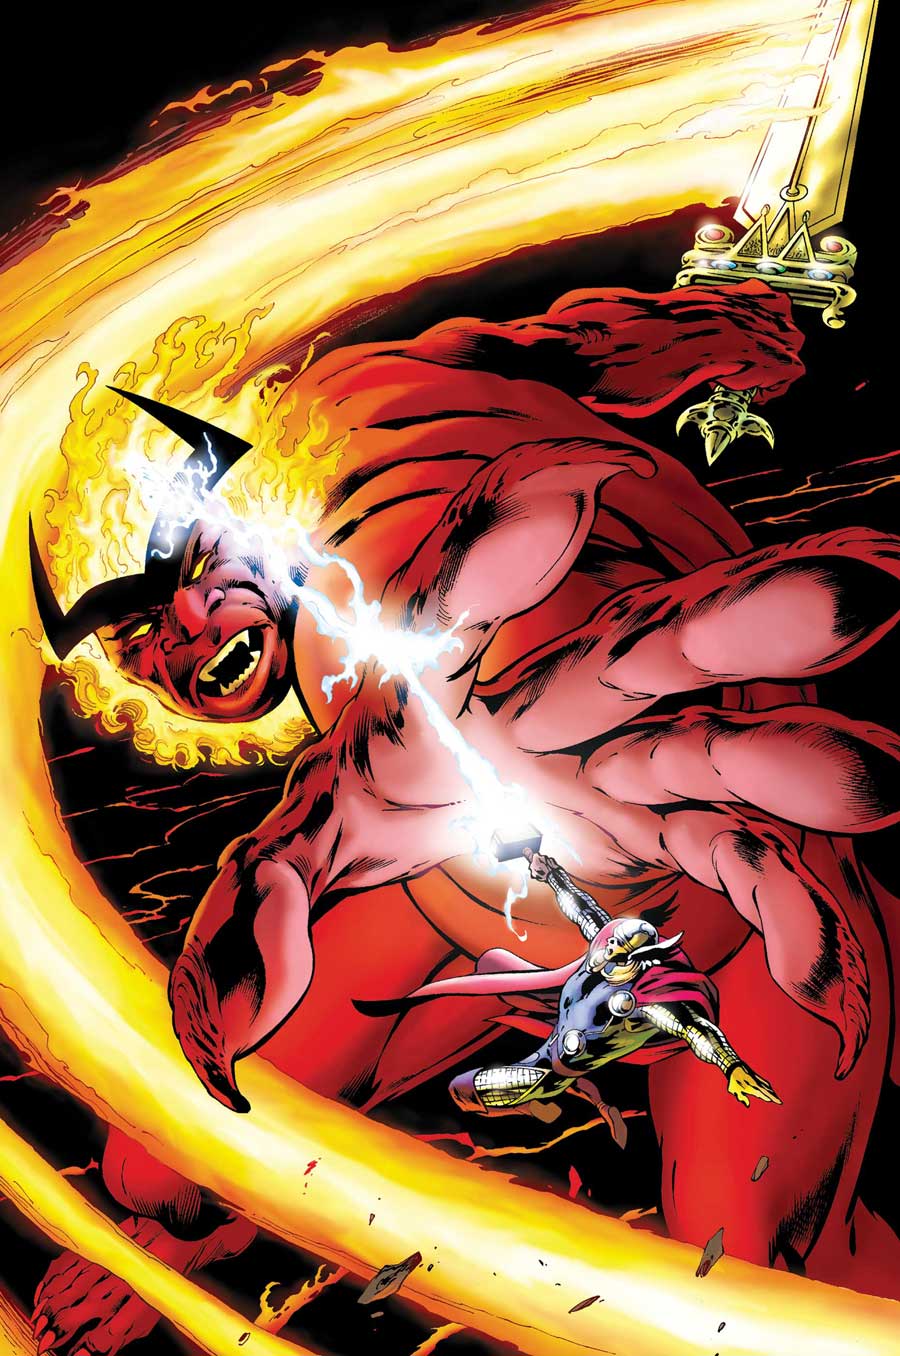 Thor (God Of War Ragnarok) VS Thanos(Endgame) - Battles - Comic Vine